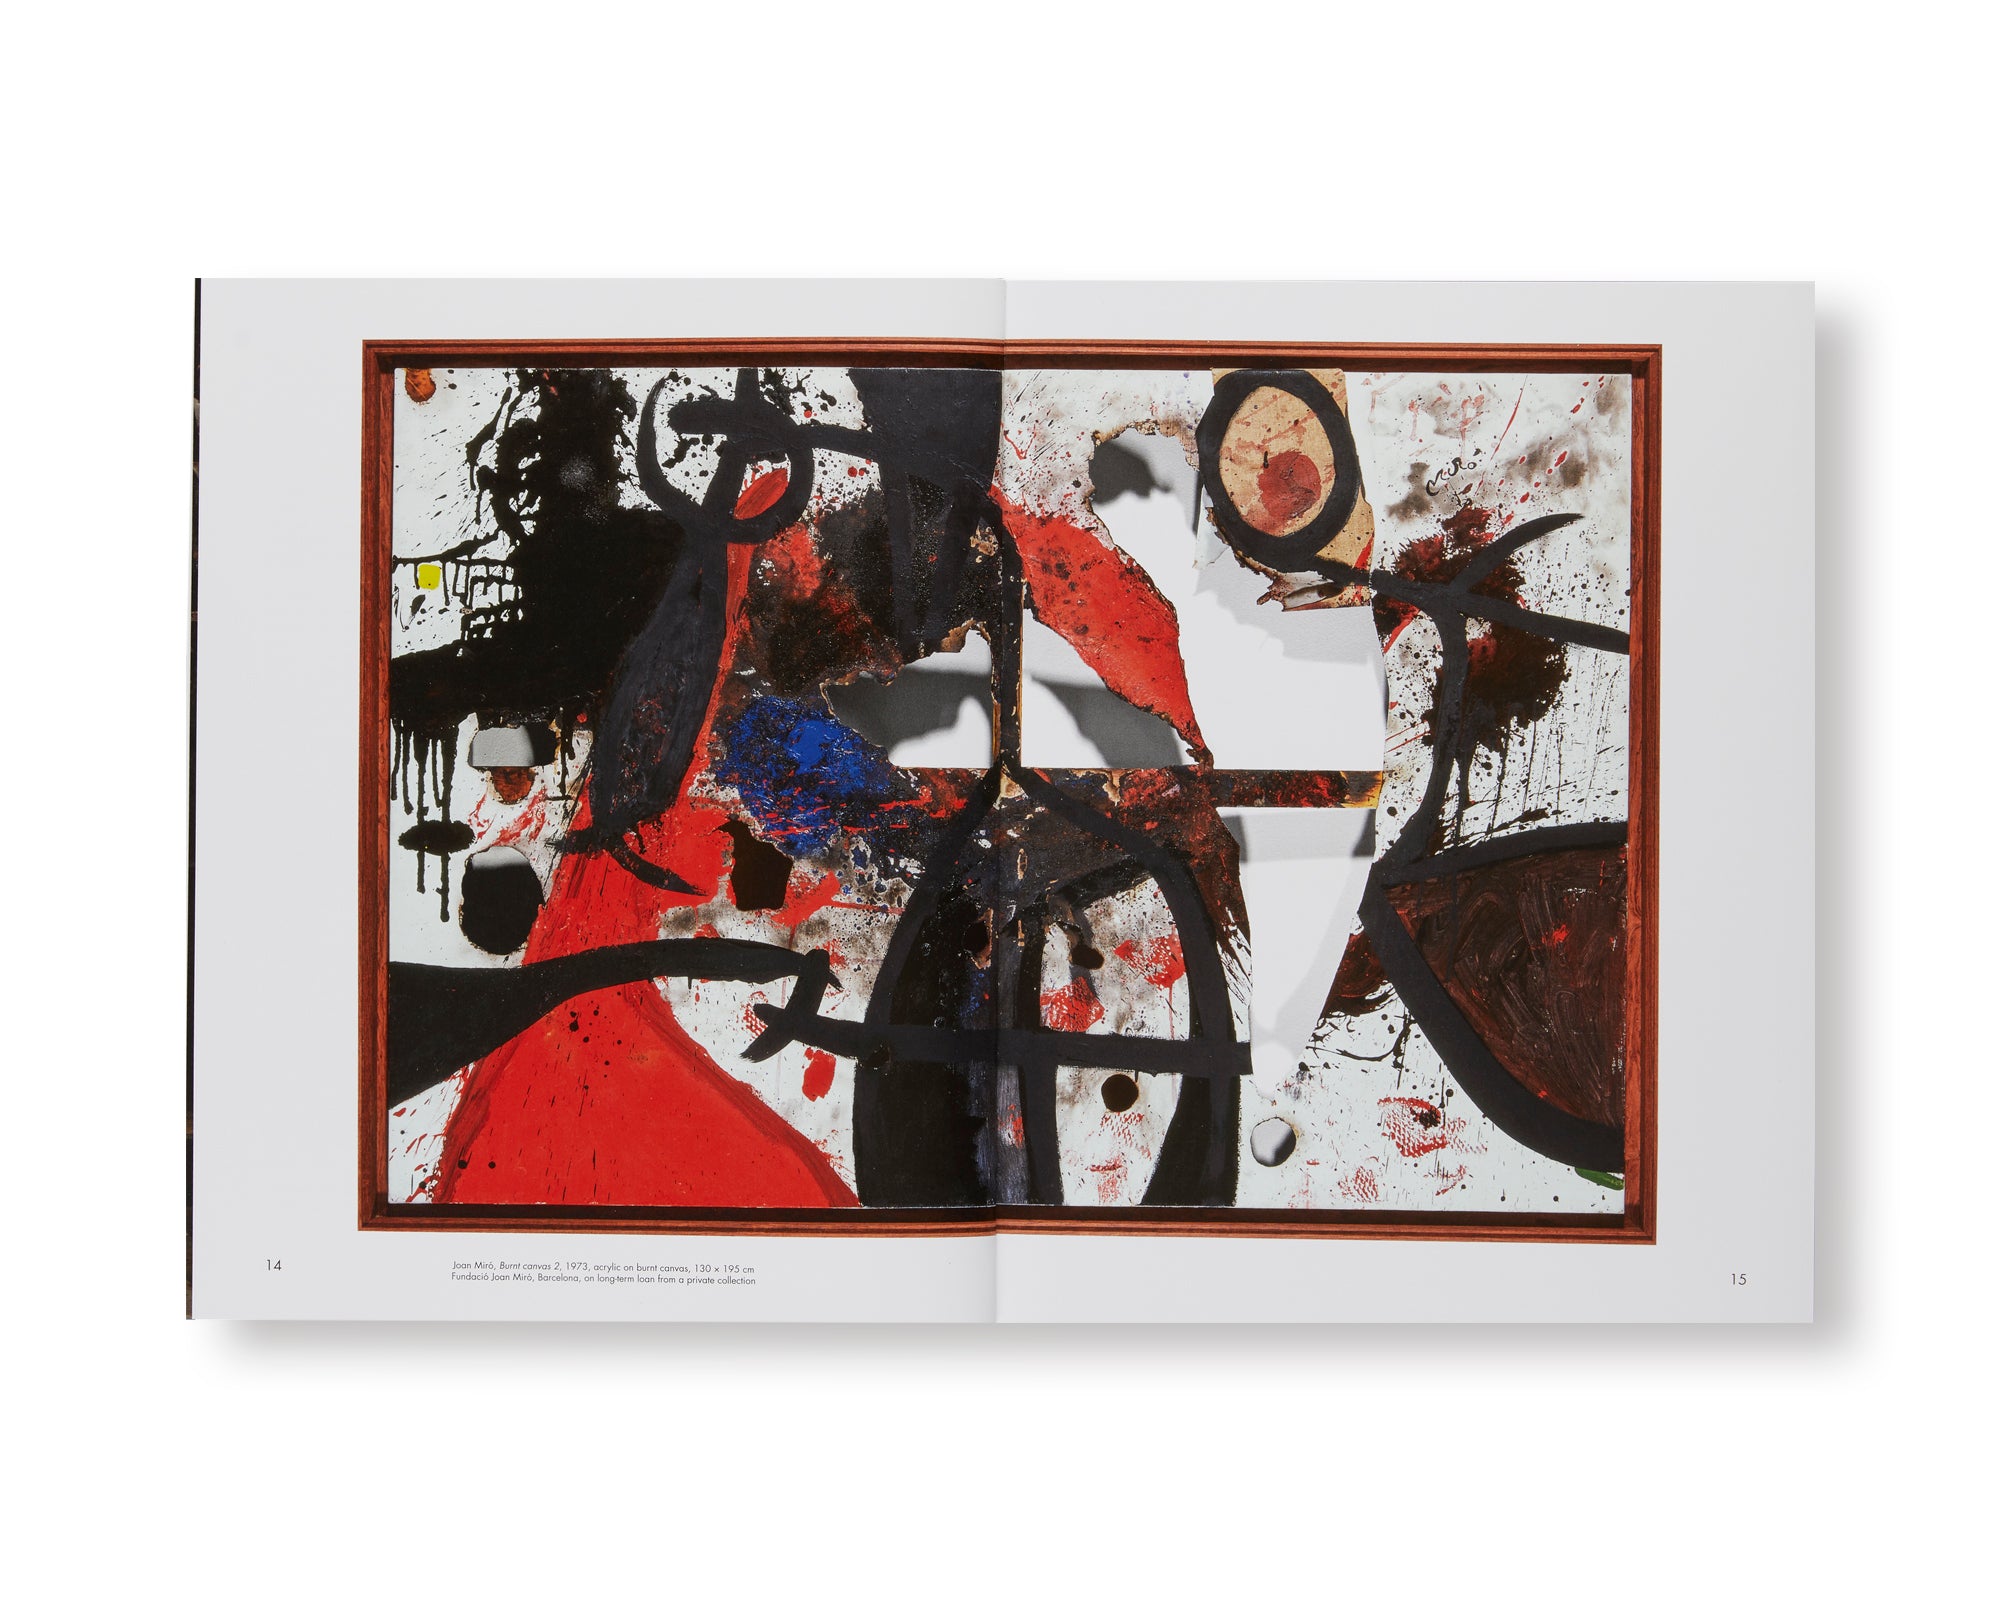 REVUE CAHIERS D’ART, 2018, MIRÓ by Joan Miró